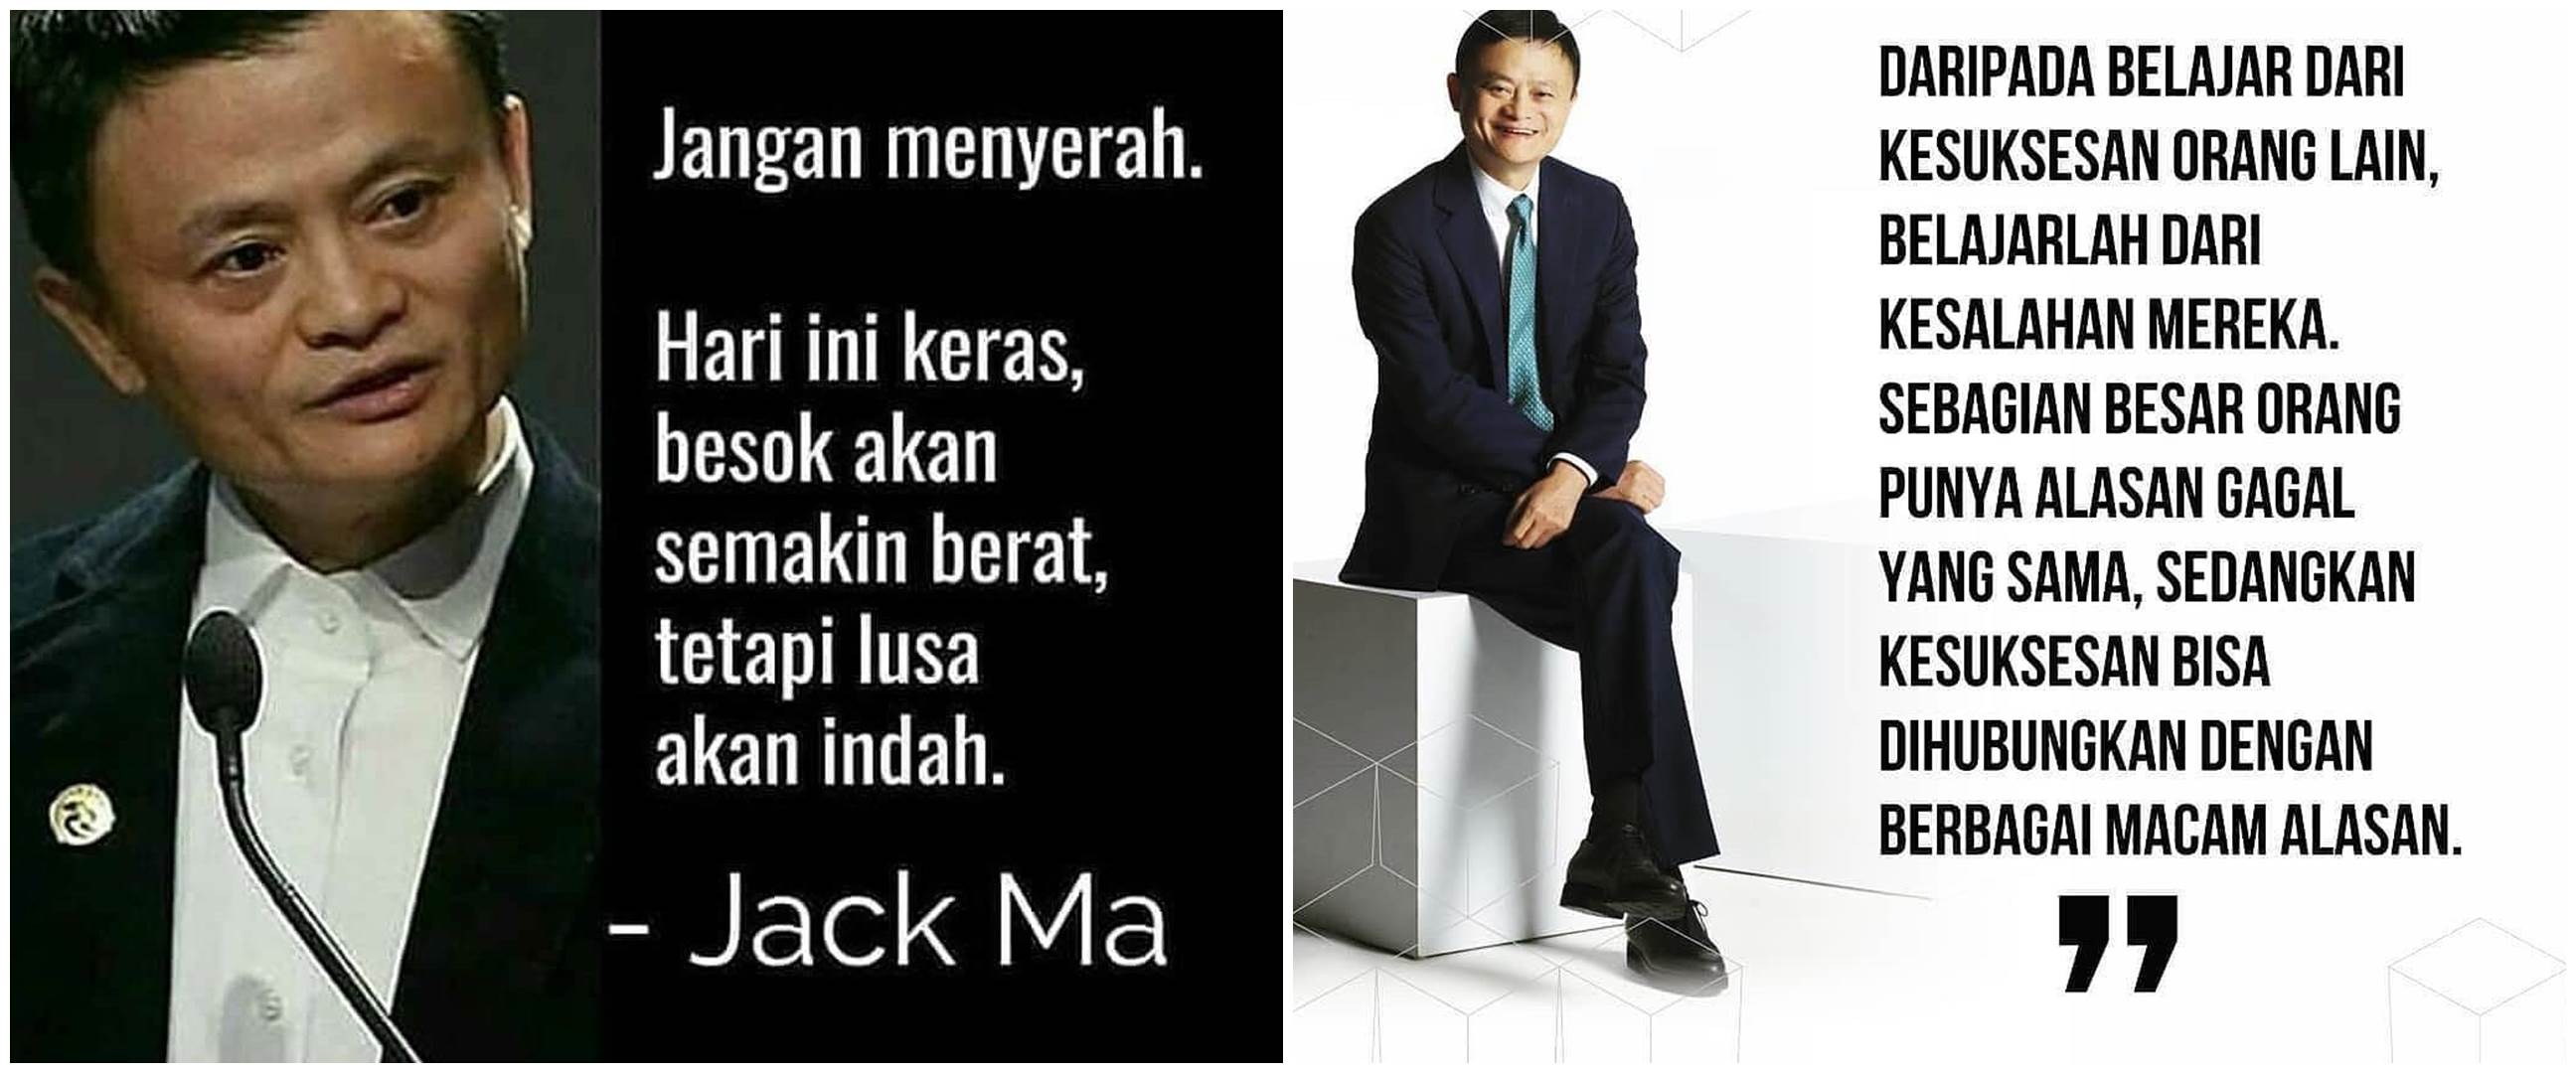 40 Kata kata  motivasi  bijak Jack  Ma  penuh makna inspir